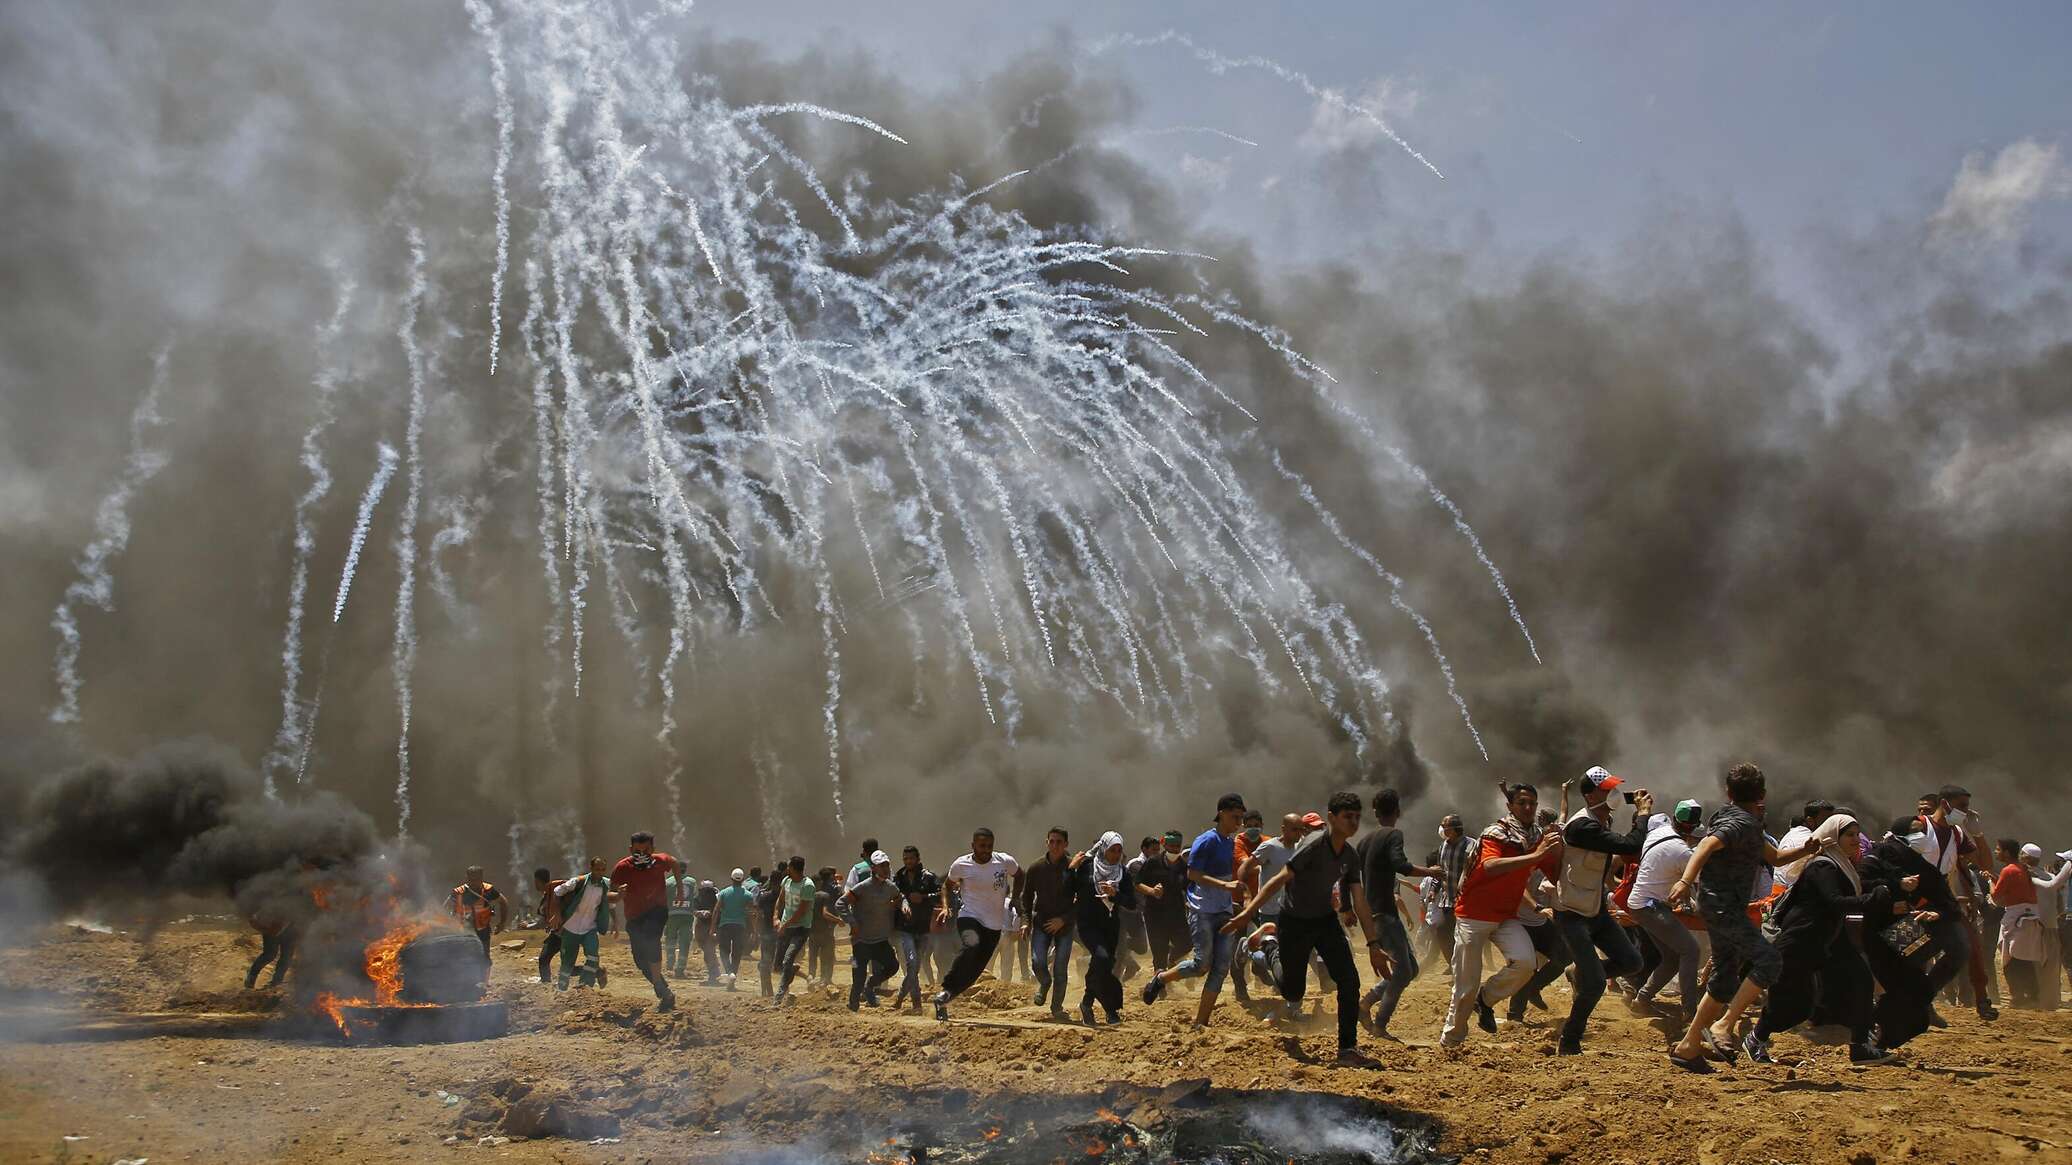 الخارجية الإسرائيلية تحمل "حماس" و"الجهاد الإسلامي" مسؤولية سلامة الأسرى في غزة